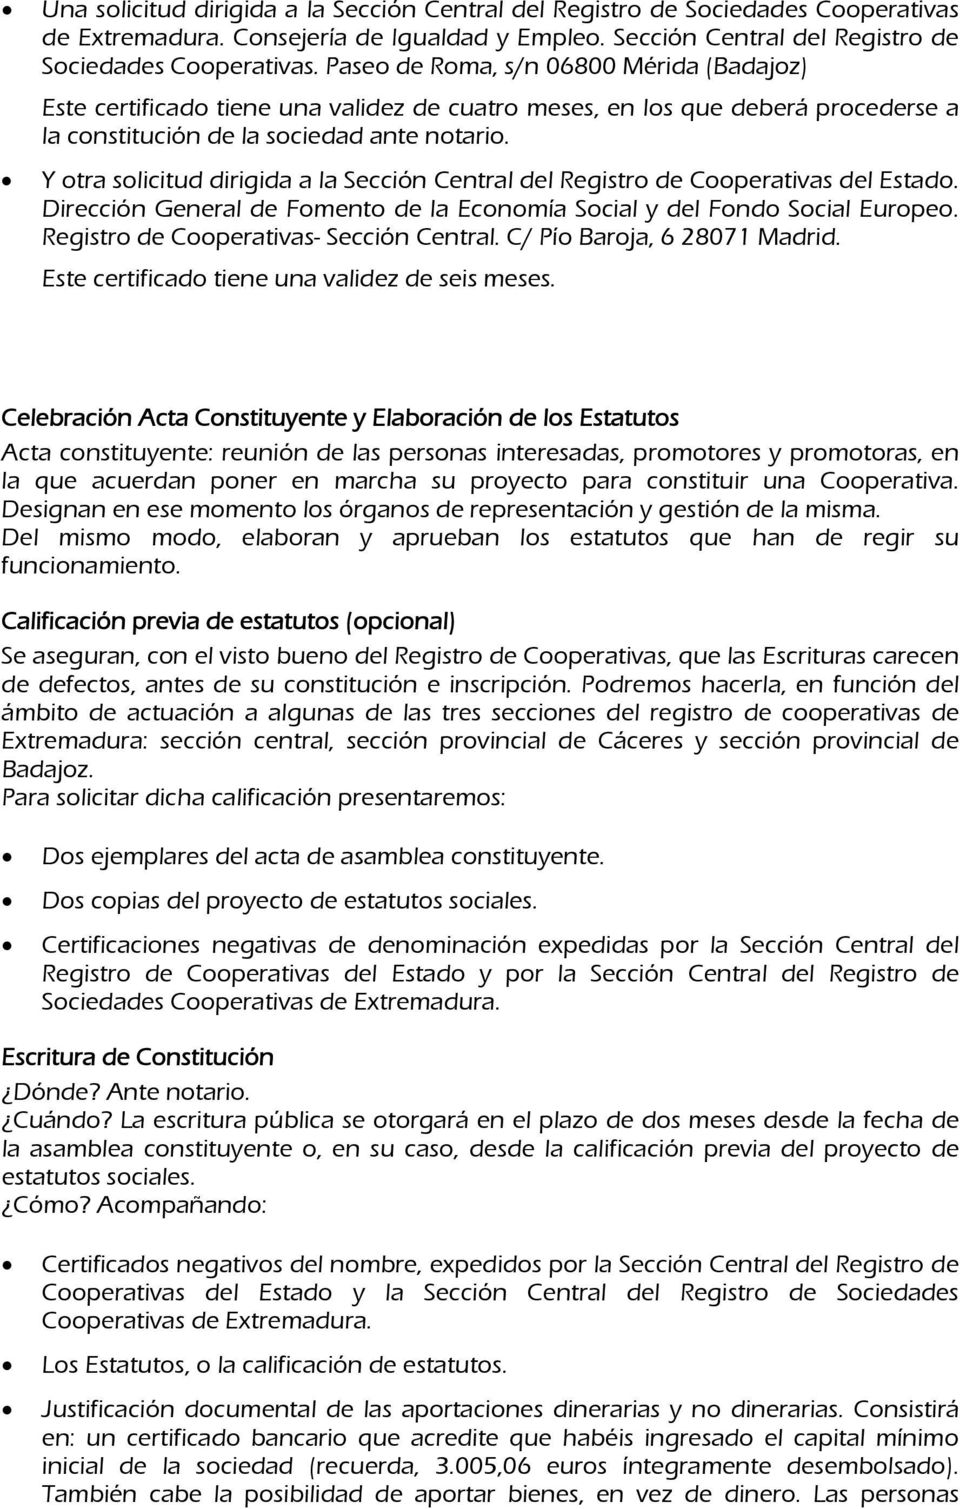 Paseo de Roma, s/n 06800 Mérida (Badajoz) Este certificado tiene una validez de cuatro meses, en los que deberá procederse a la constitución de la sociedad ante notario.